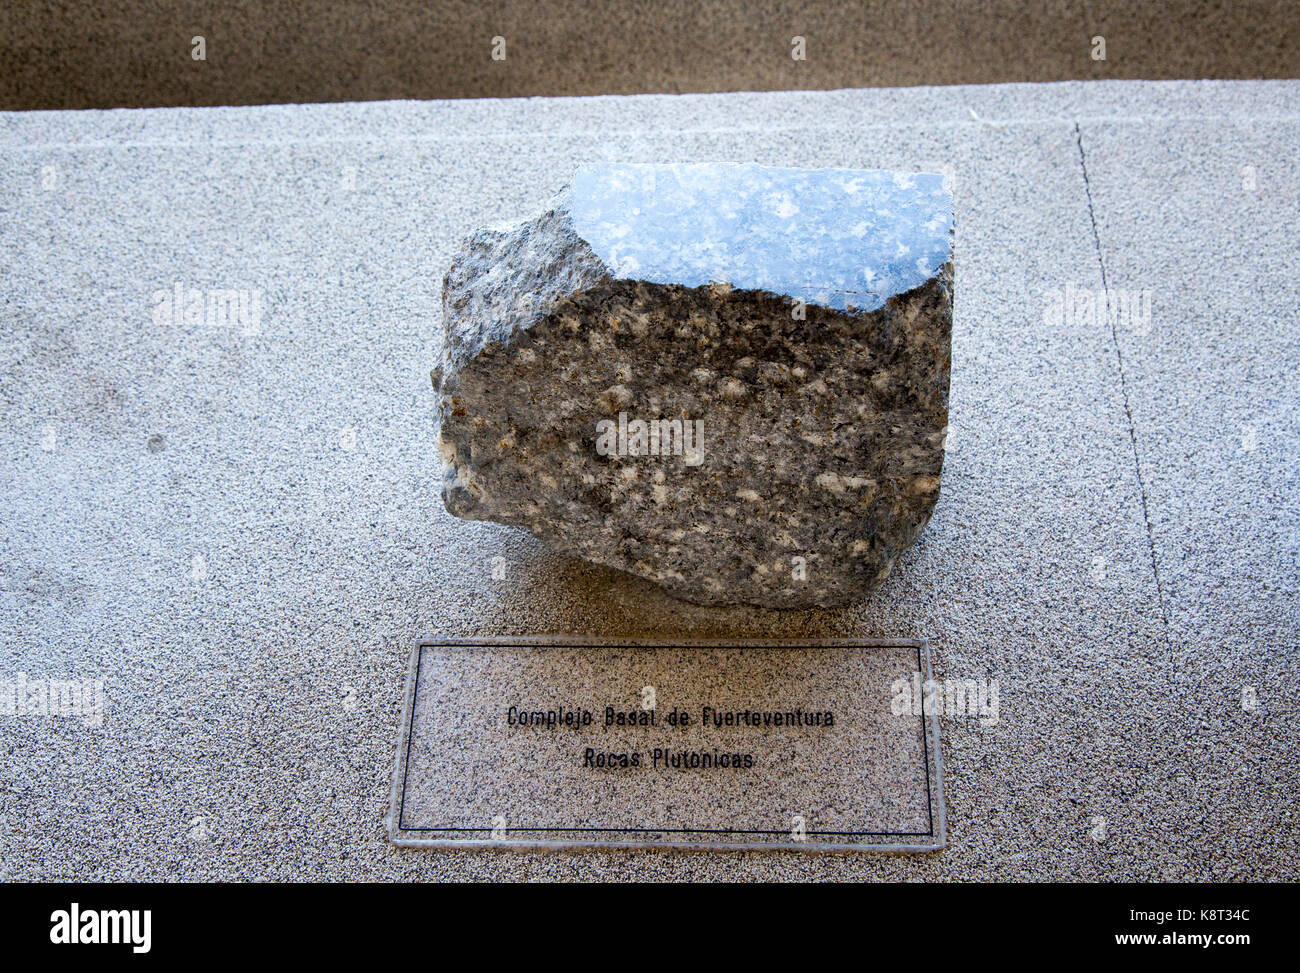 Échantillon de roche basale complexe de Fuerteventura, géologie afficher Casa de los Volcanes centre d'étude des volcans, Lanzarote, Iles Canaries, Espagne Banque D'Images